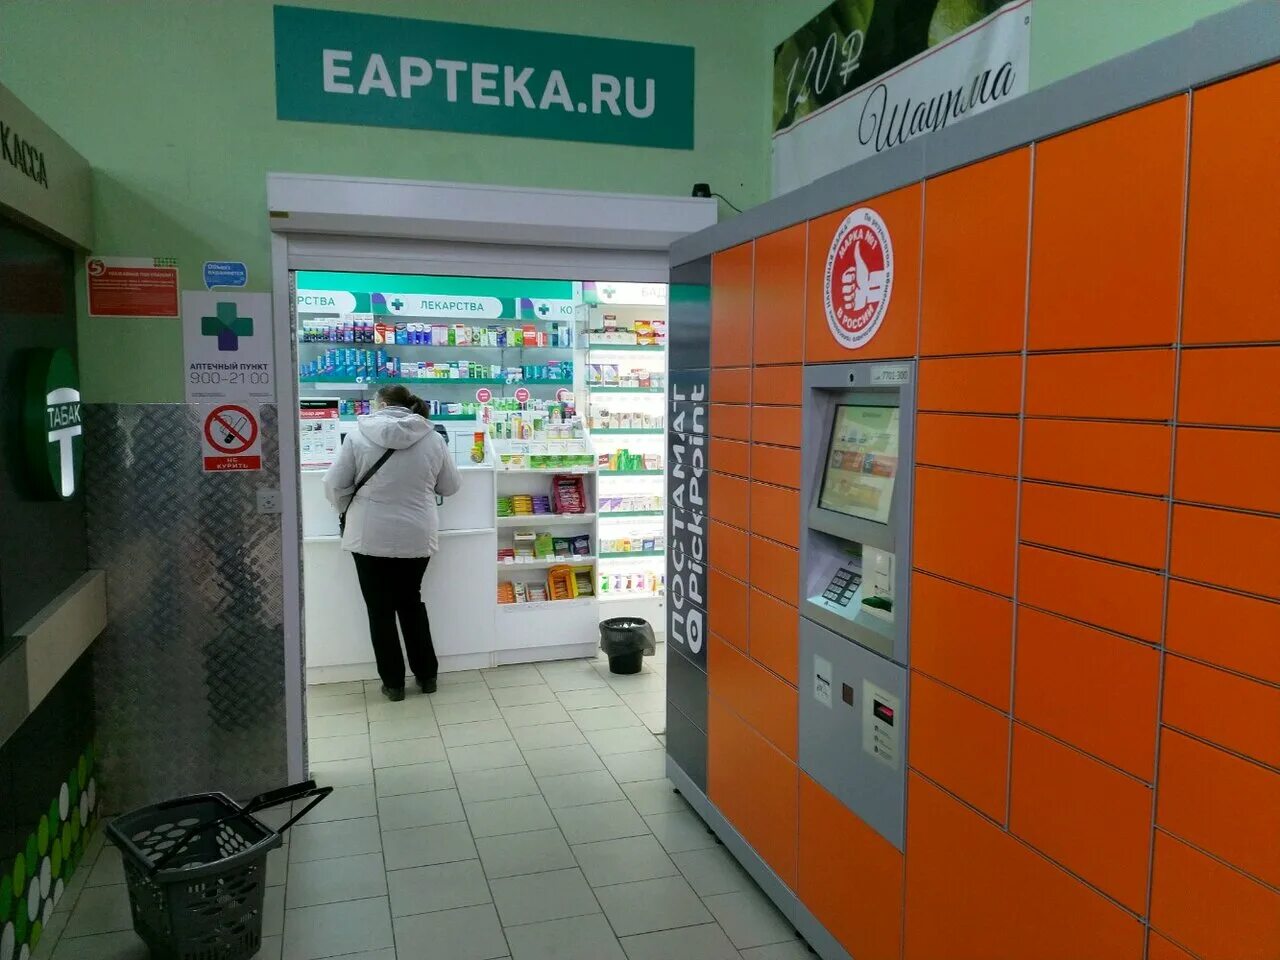 Еаптека ру заказ лекарств с доставкой московская. Аптека сбереаптека. Сбер ЕАПТЕКА. Сбер аптека. Е аптека Тверь.